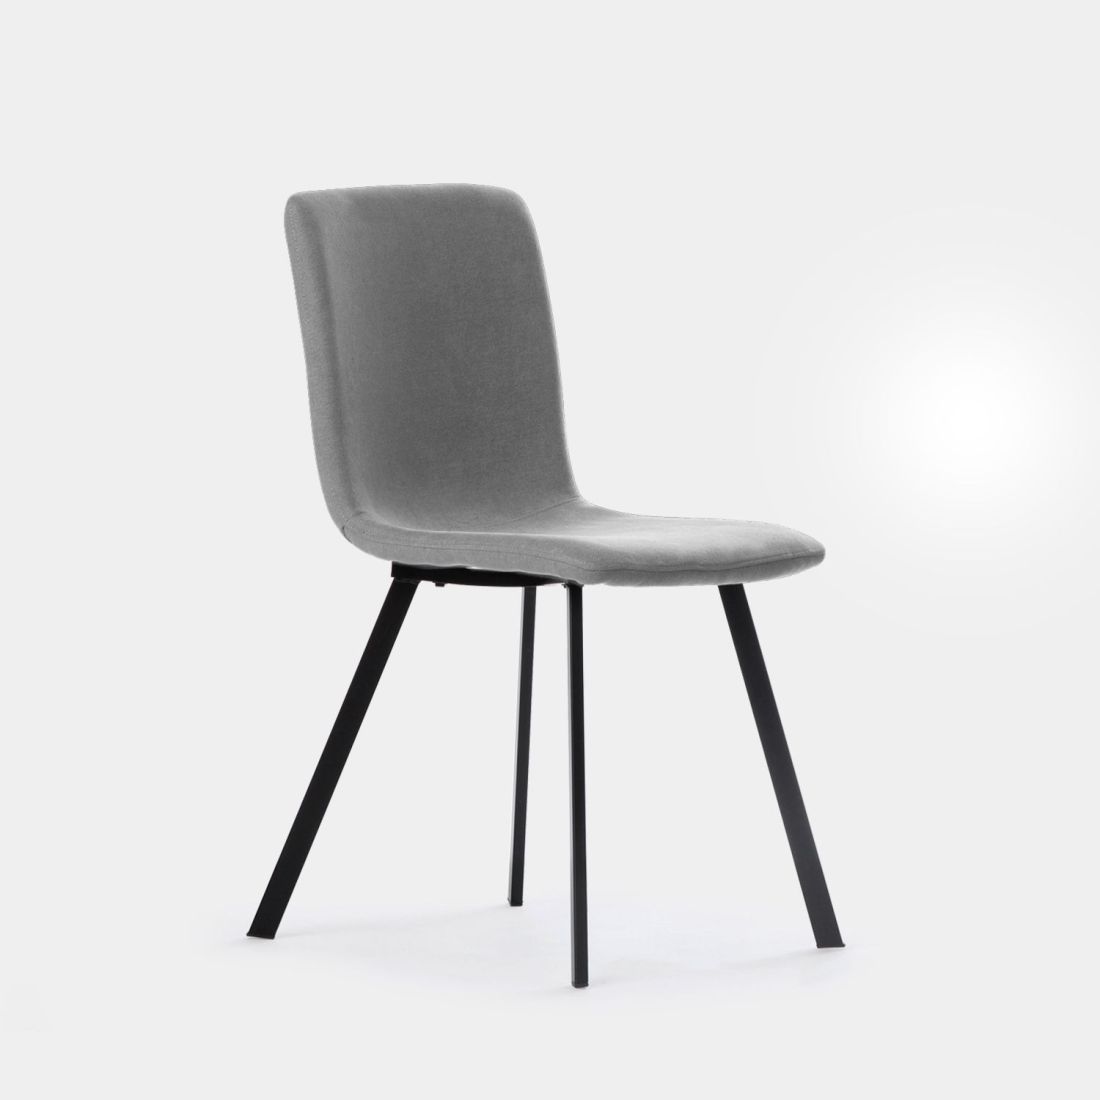 La silla de comedor Maia en tapizado gris con pata metálica negra es capaz de transformar por completo la decoración de tu comedor aportando un extra de elegancia y sofisticación. Un diseño realizado para adaptarse a nuestro cuerpo